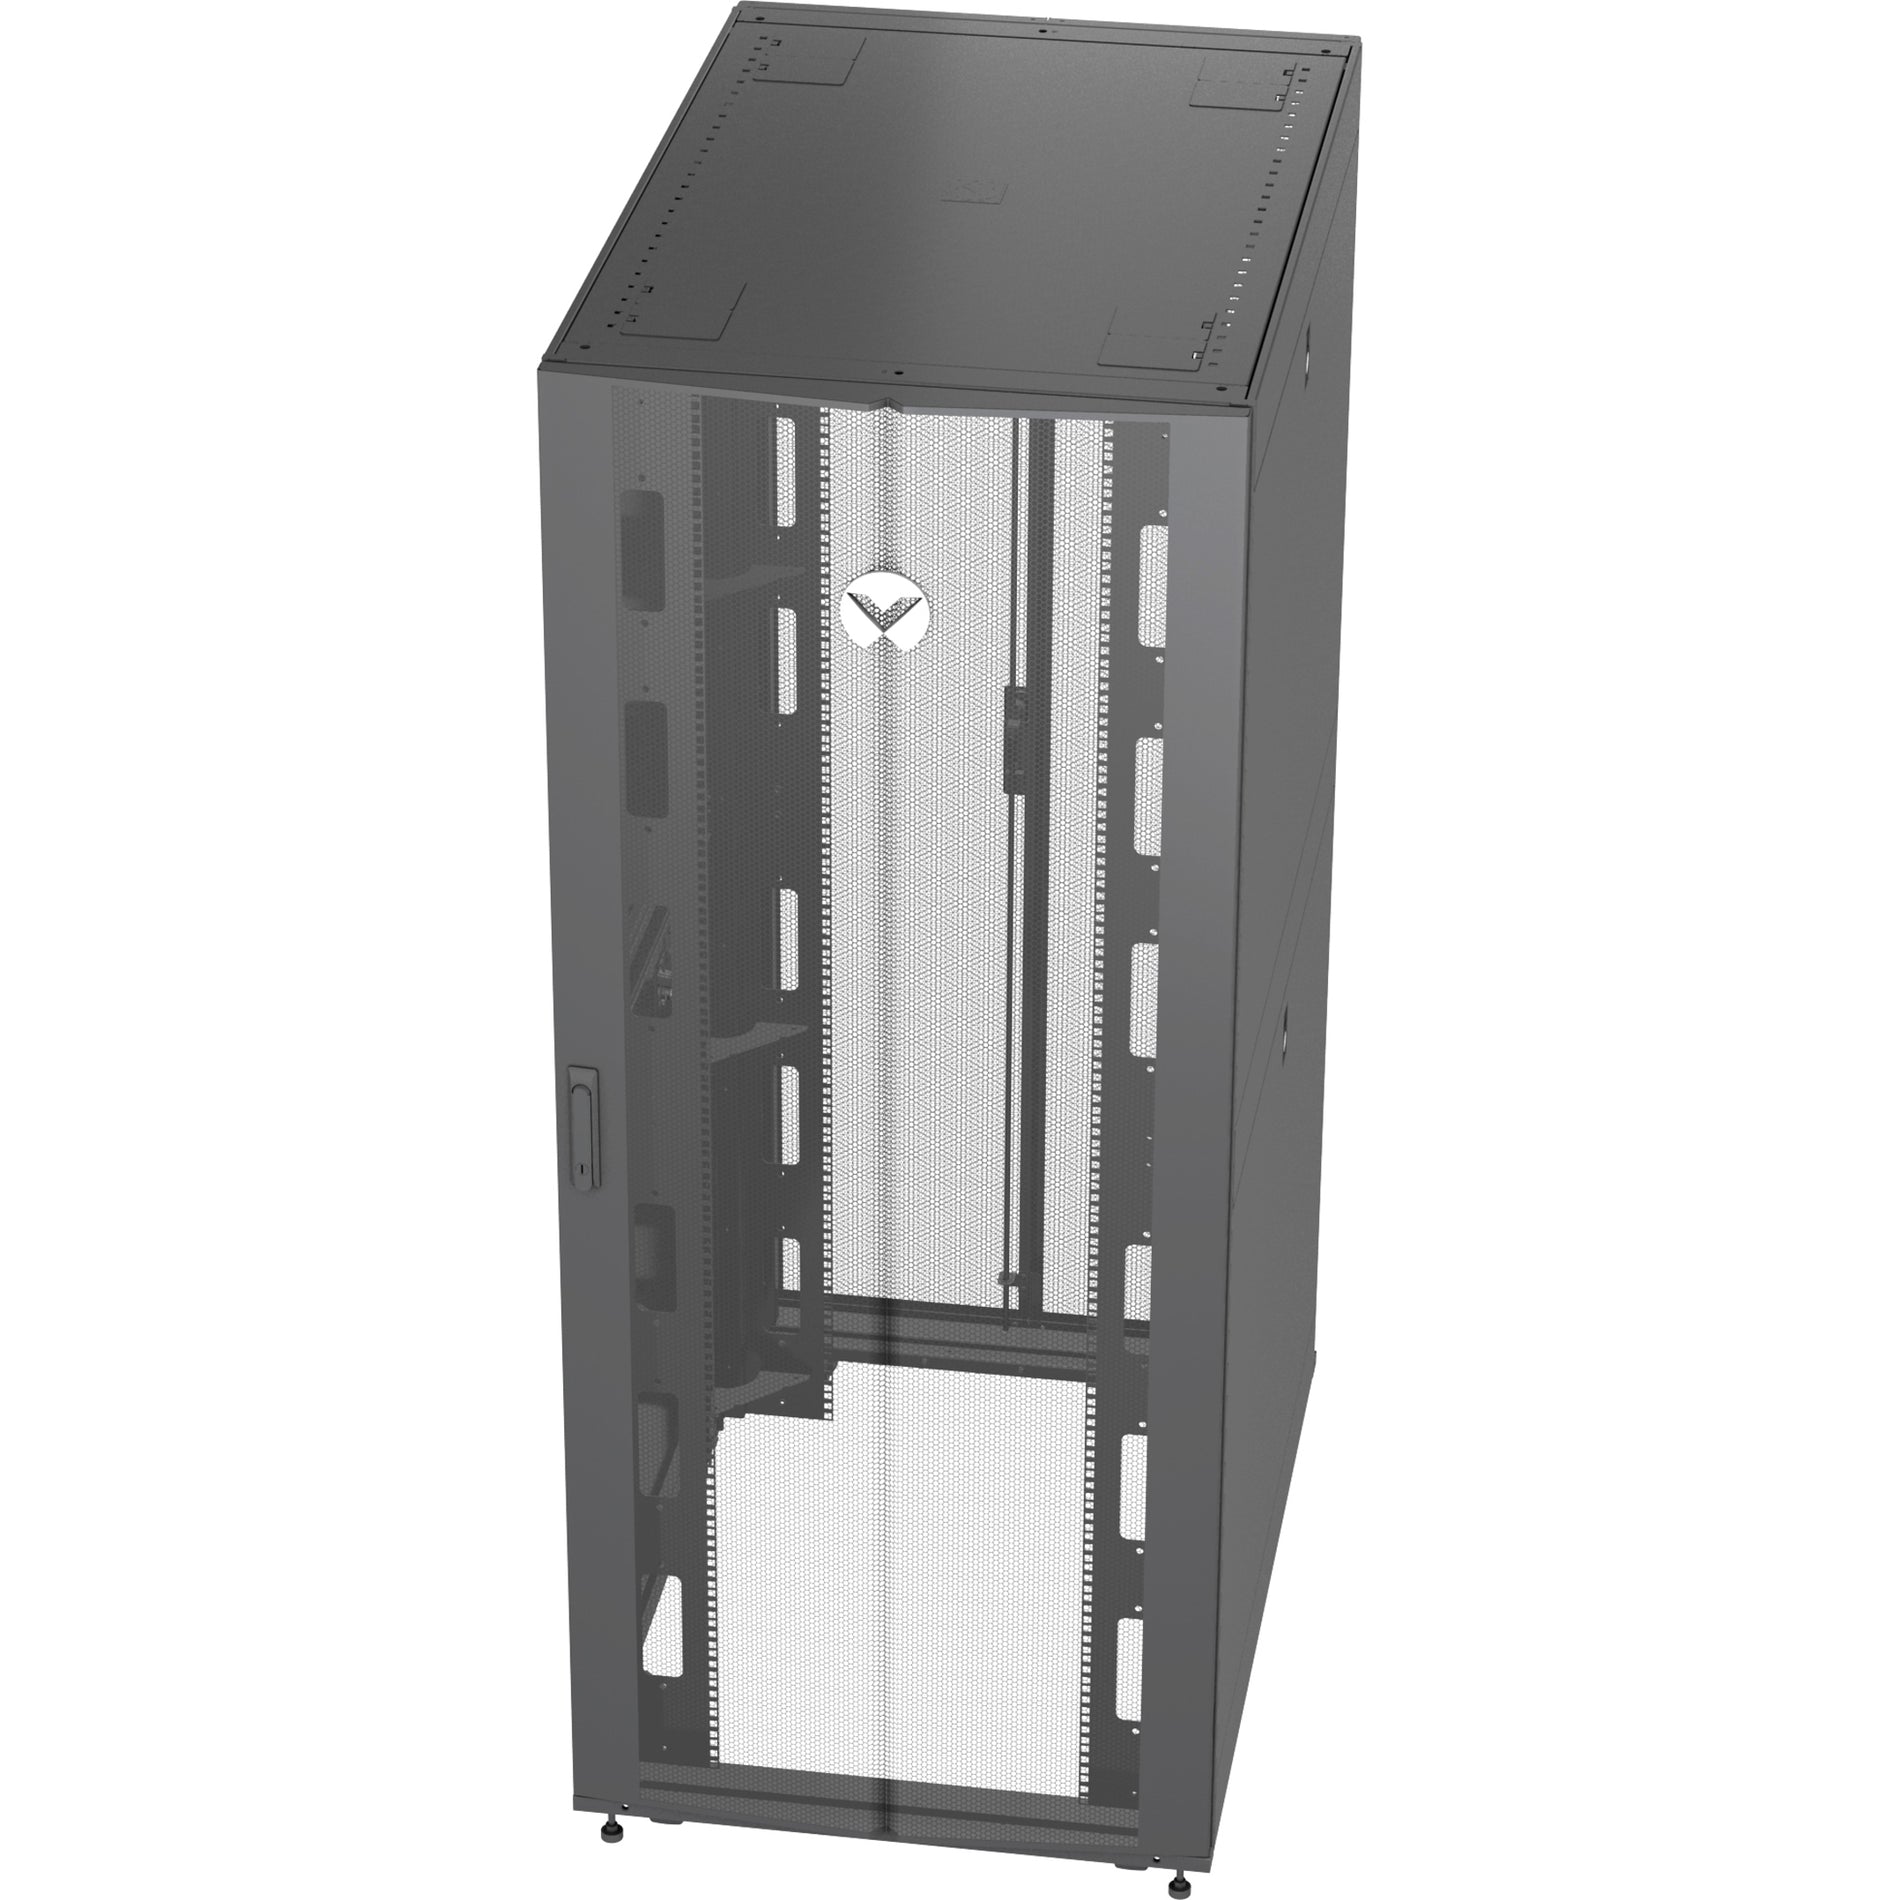 VERTIV VR3300 Vertiv VR Rack - 42U Server Rack Enclosure, 600x1200mm, 19-inch Cabinet